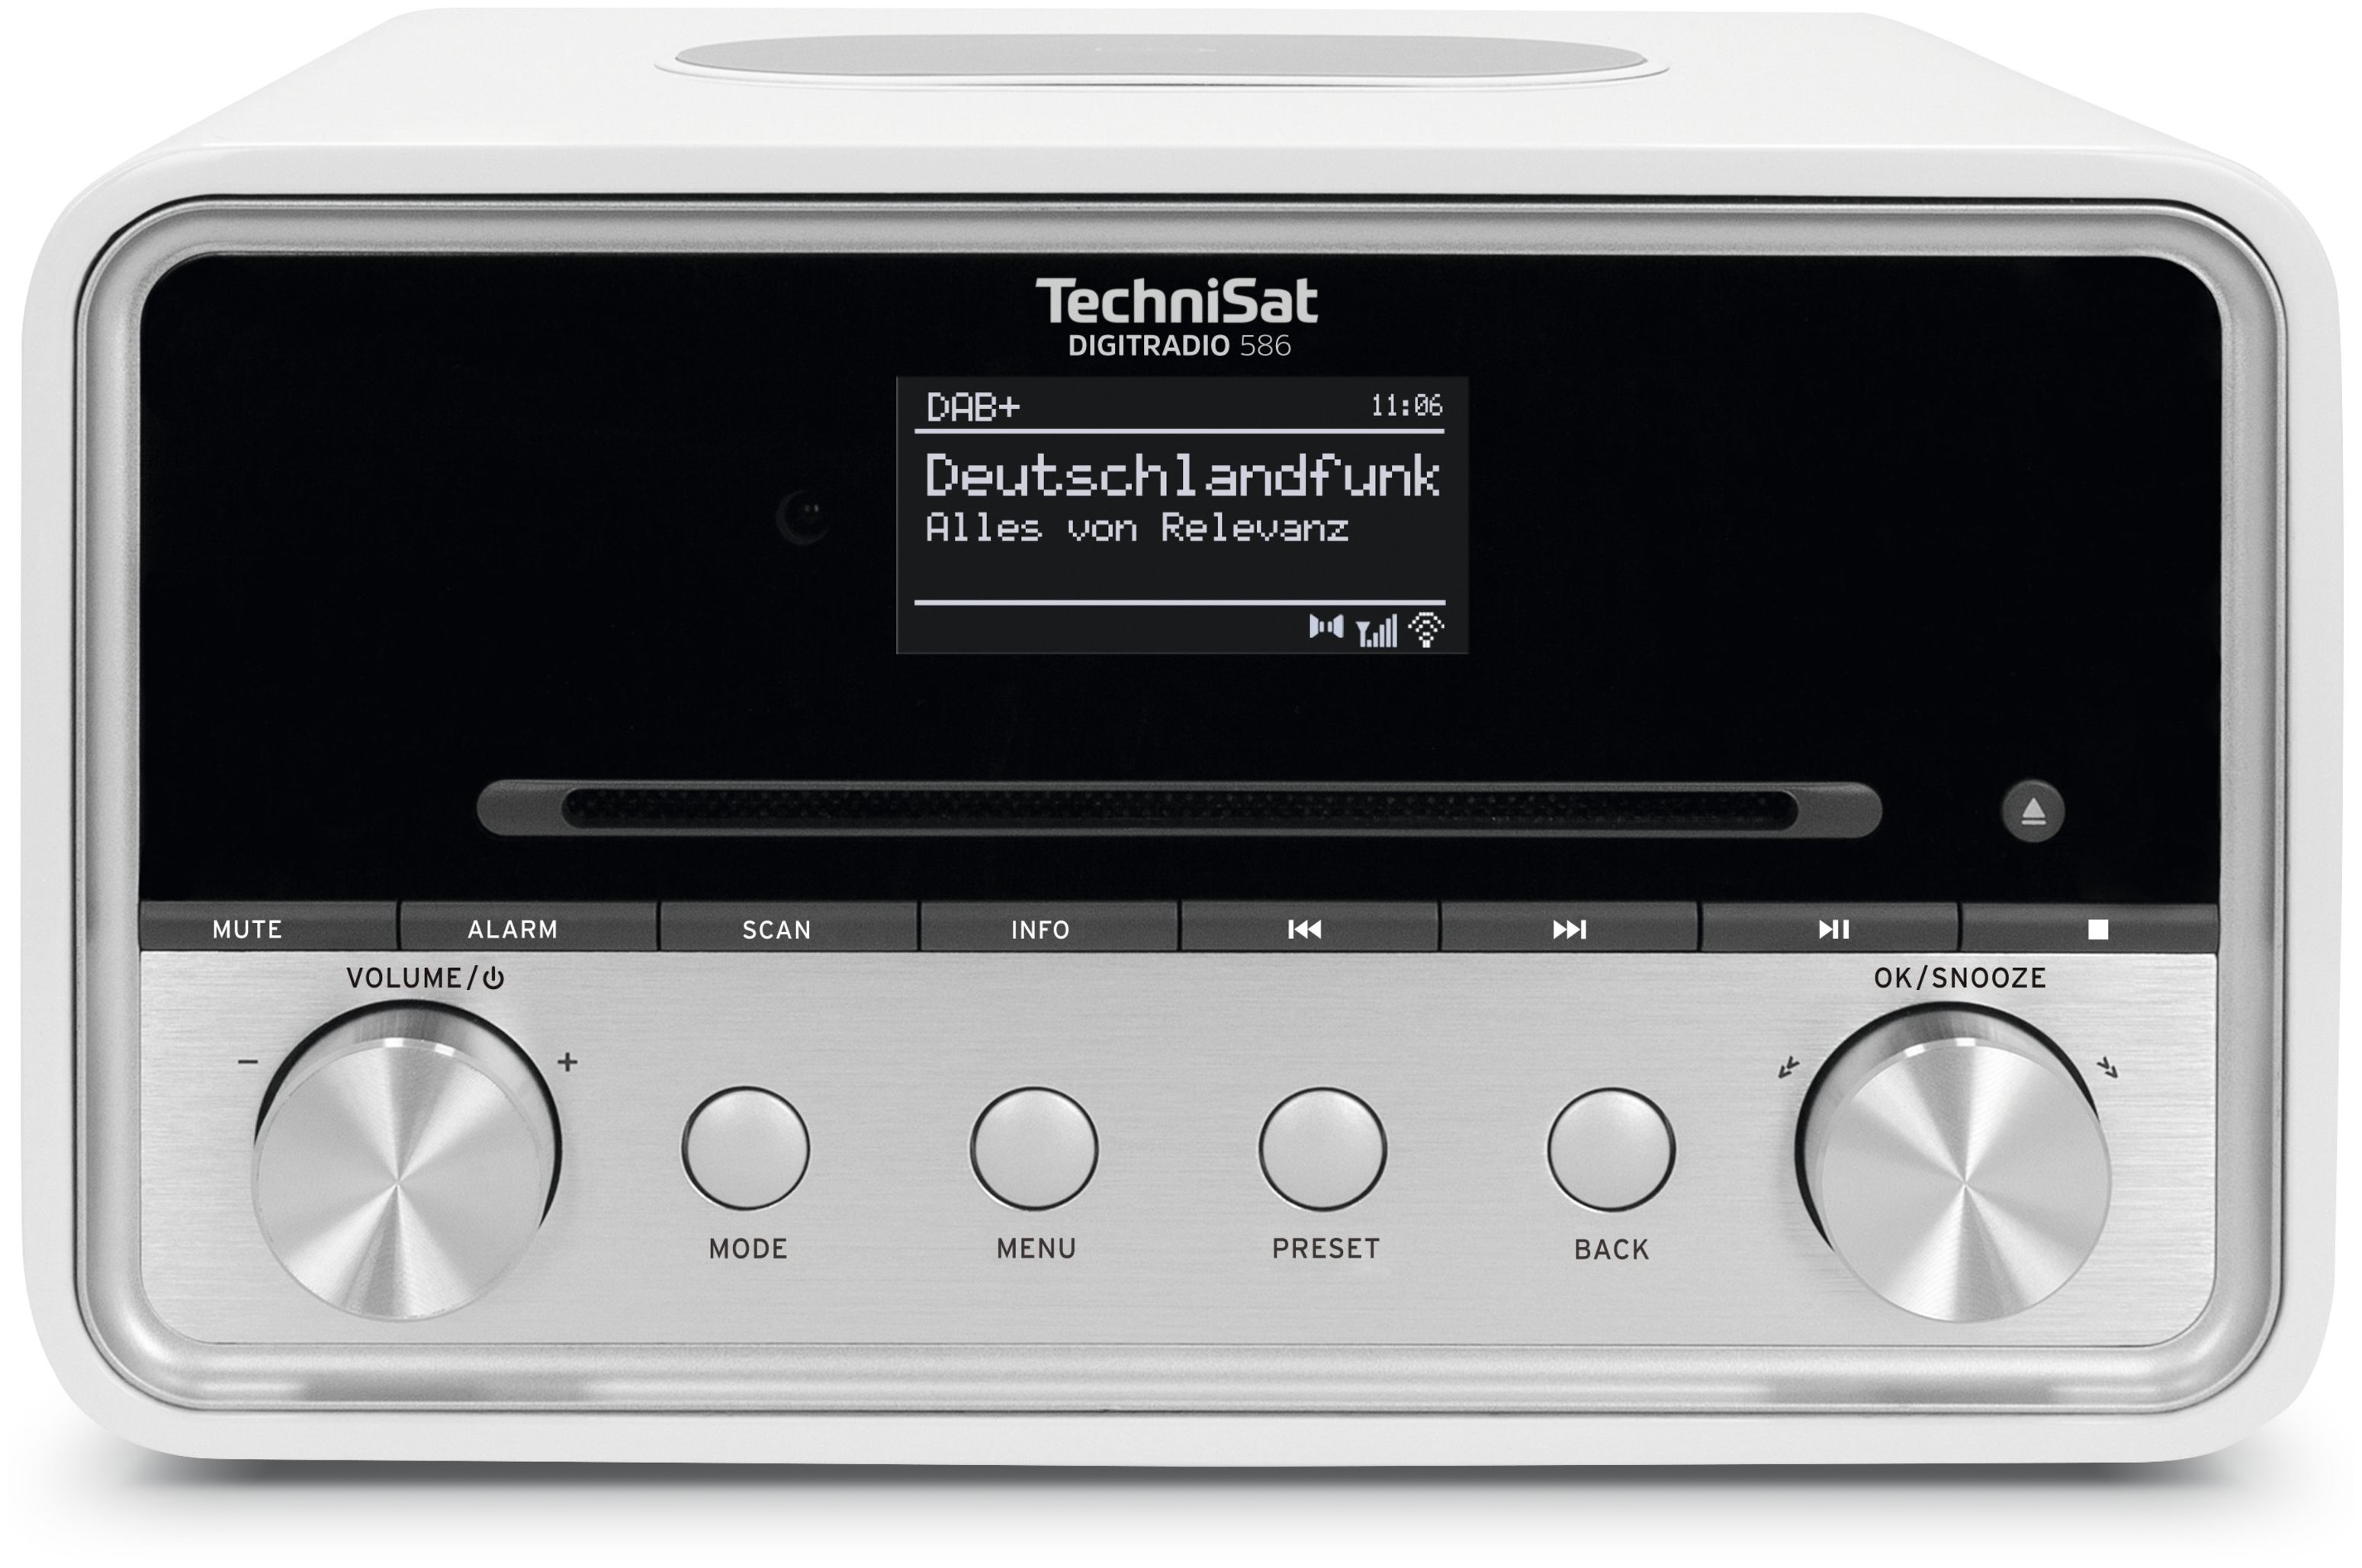 Radio Technomarkt von TechniSat Persönlich DAB+, Bluetooth expert (Weiß) Digitradio FM 586